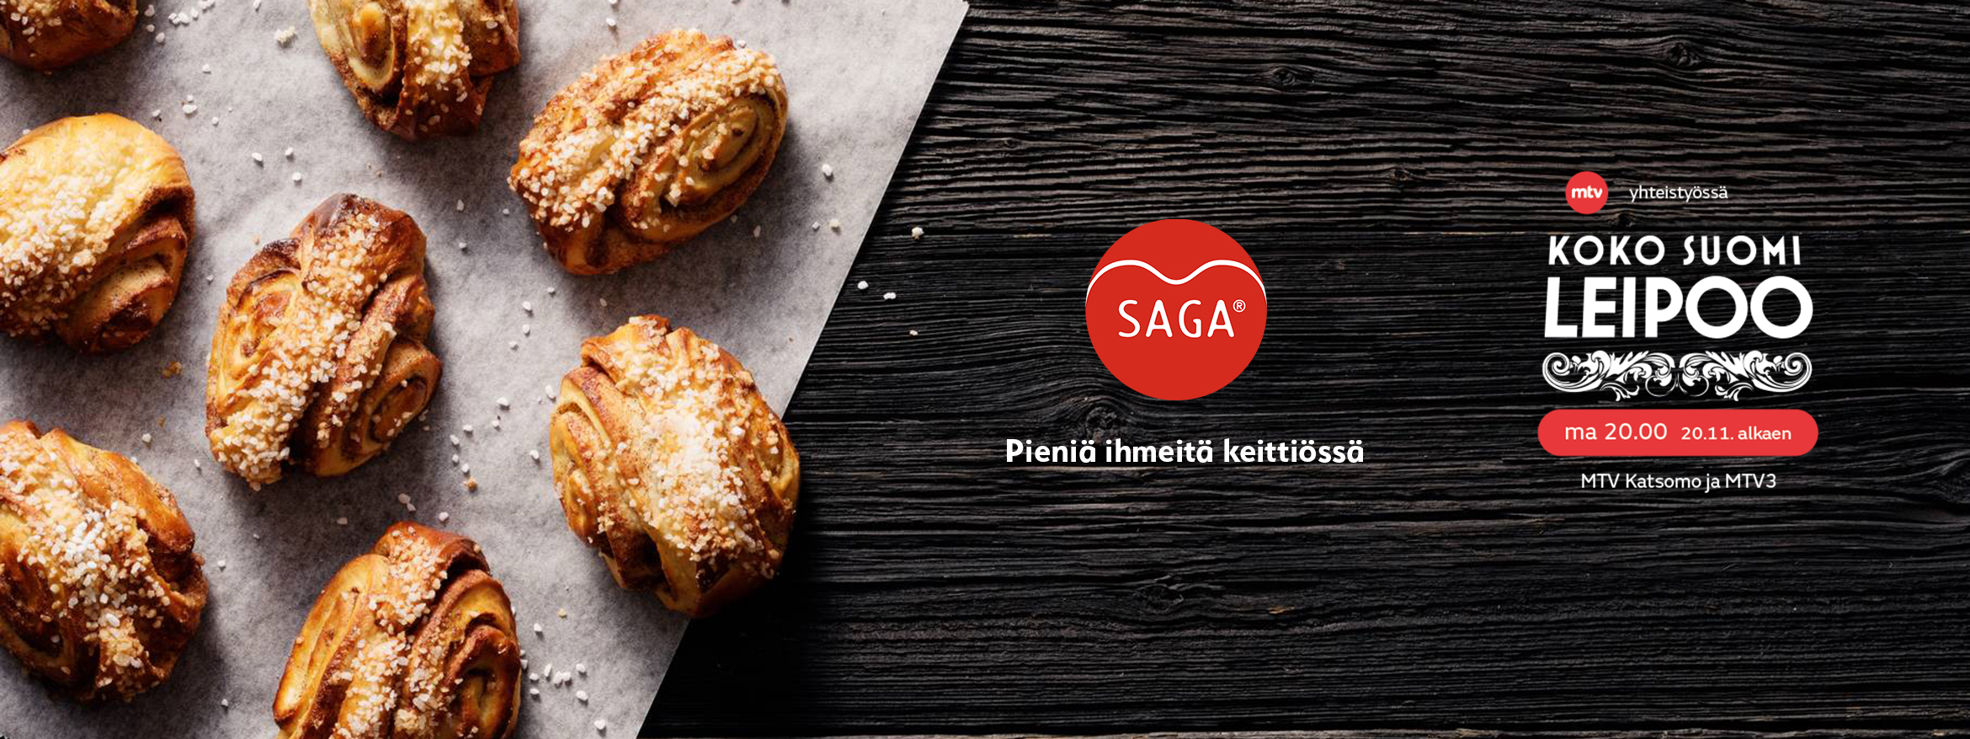 SAGA on Koko Suomi leipoo -ohjelman  yhteistyökumppani